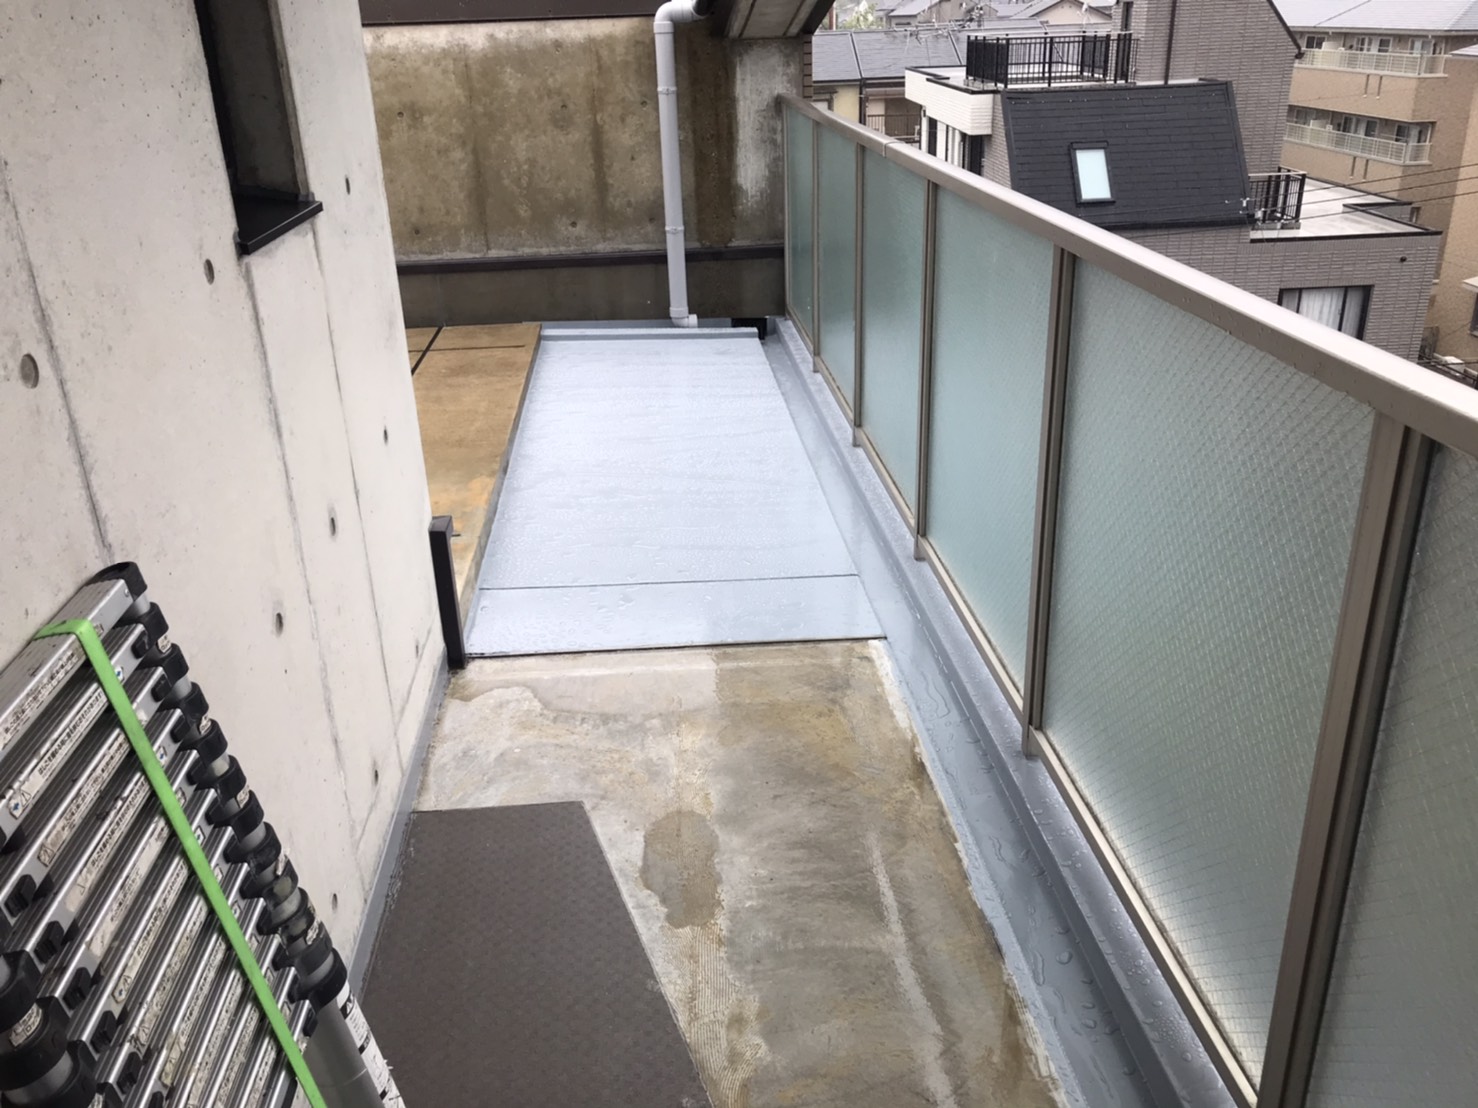 西京区住宅公社マンション外部階段防水完了